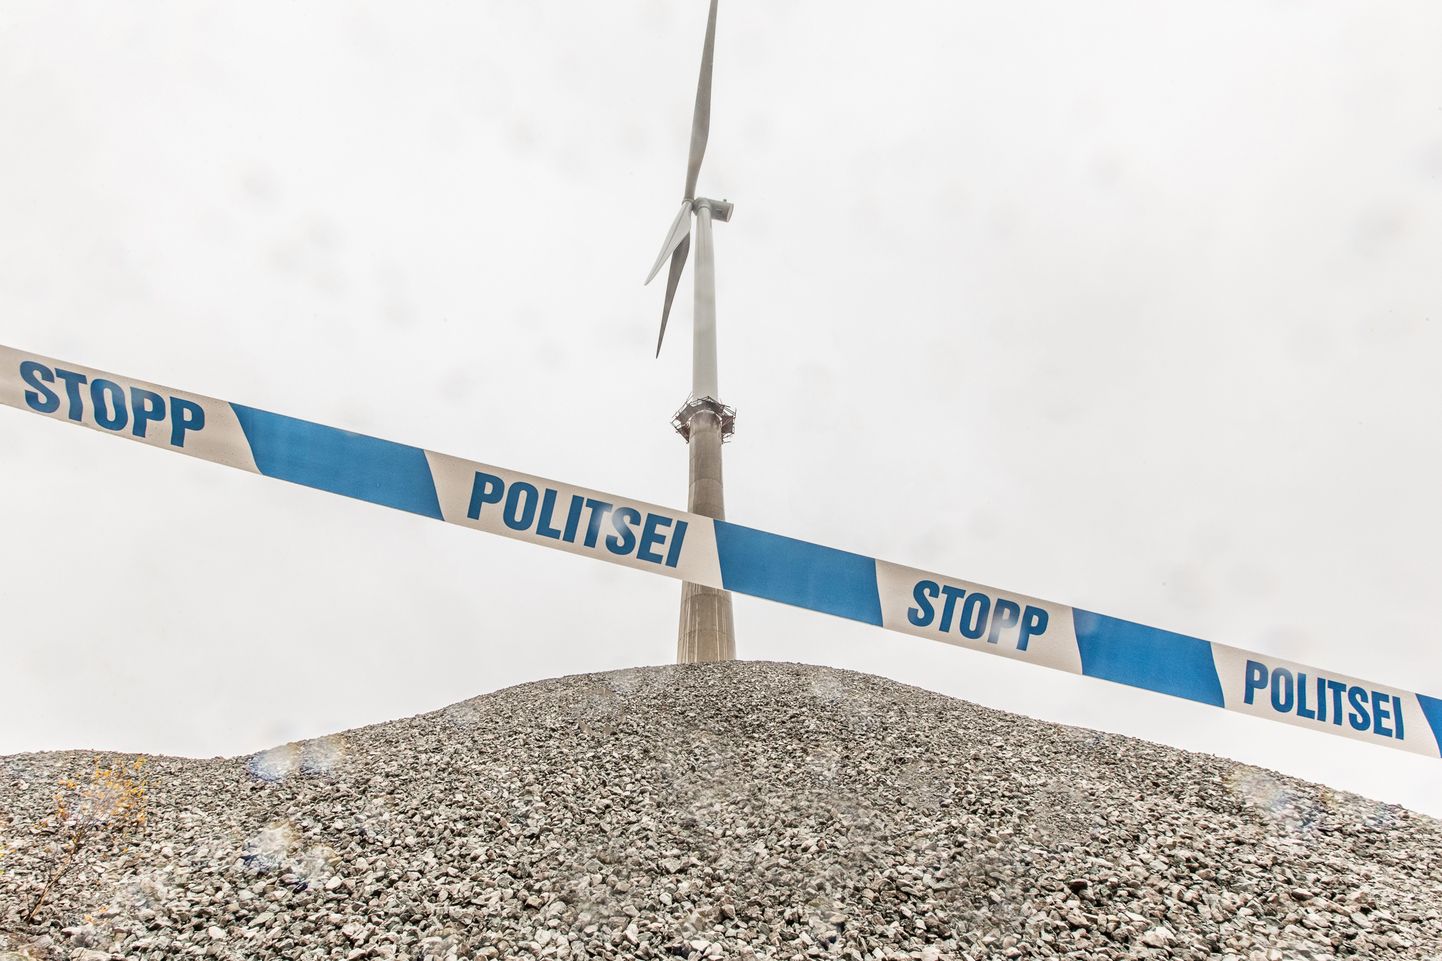 Два недостроенных ветряка по-прежнему ограждены полицейскими ограничительными лентами и работы там остановлены.